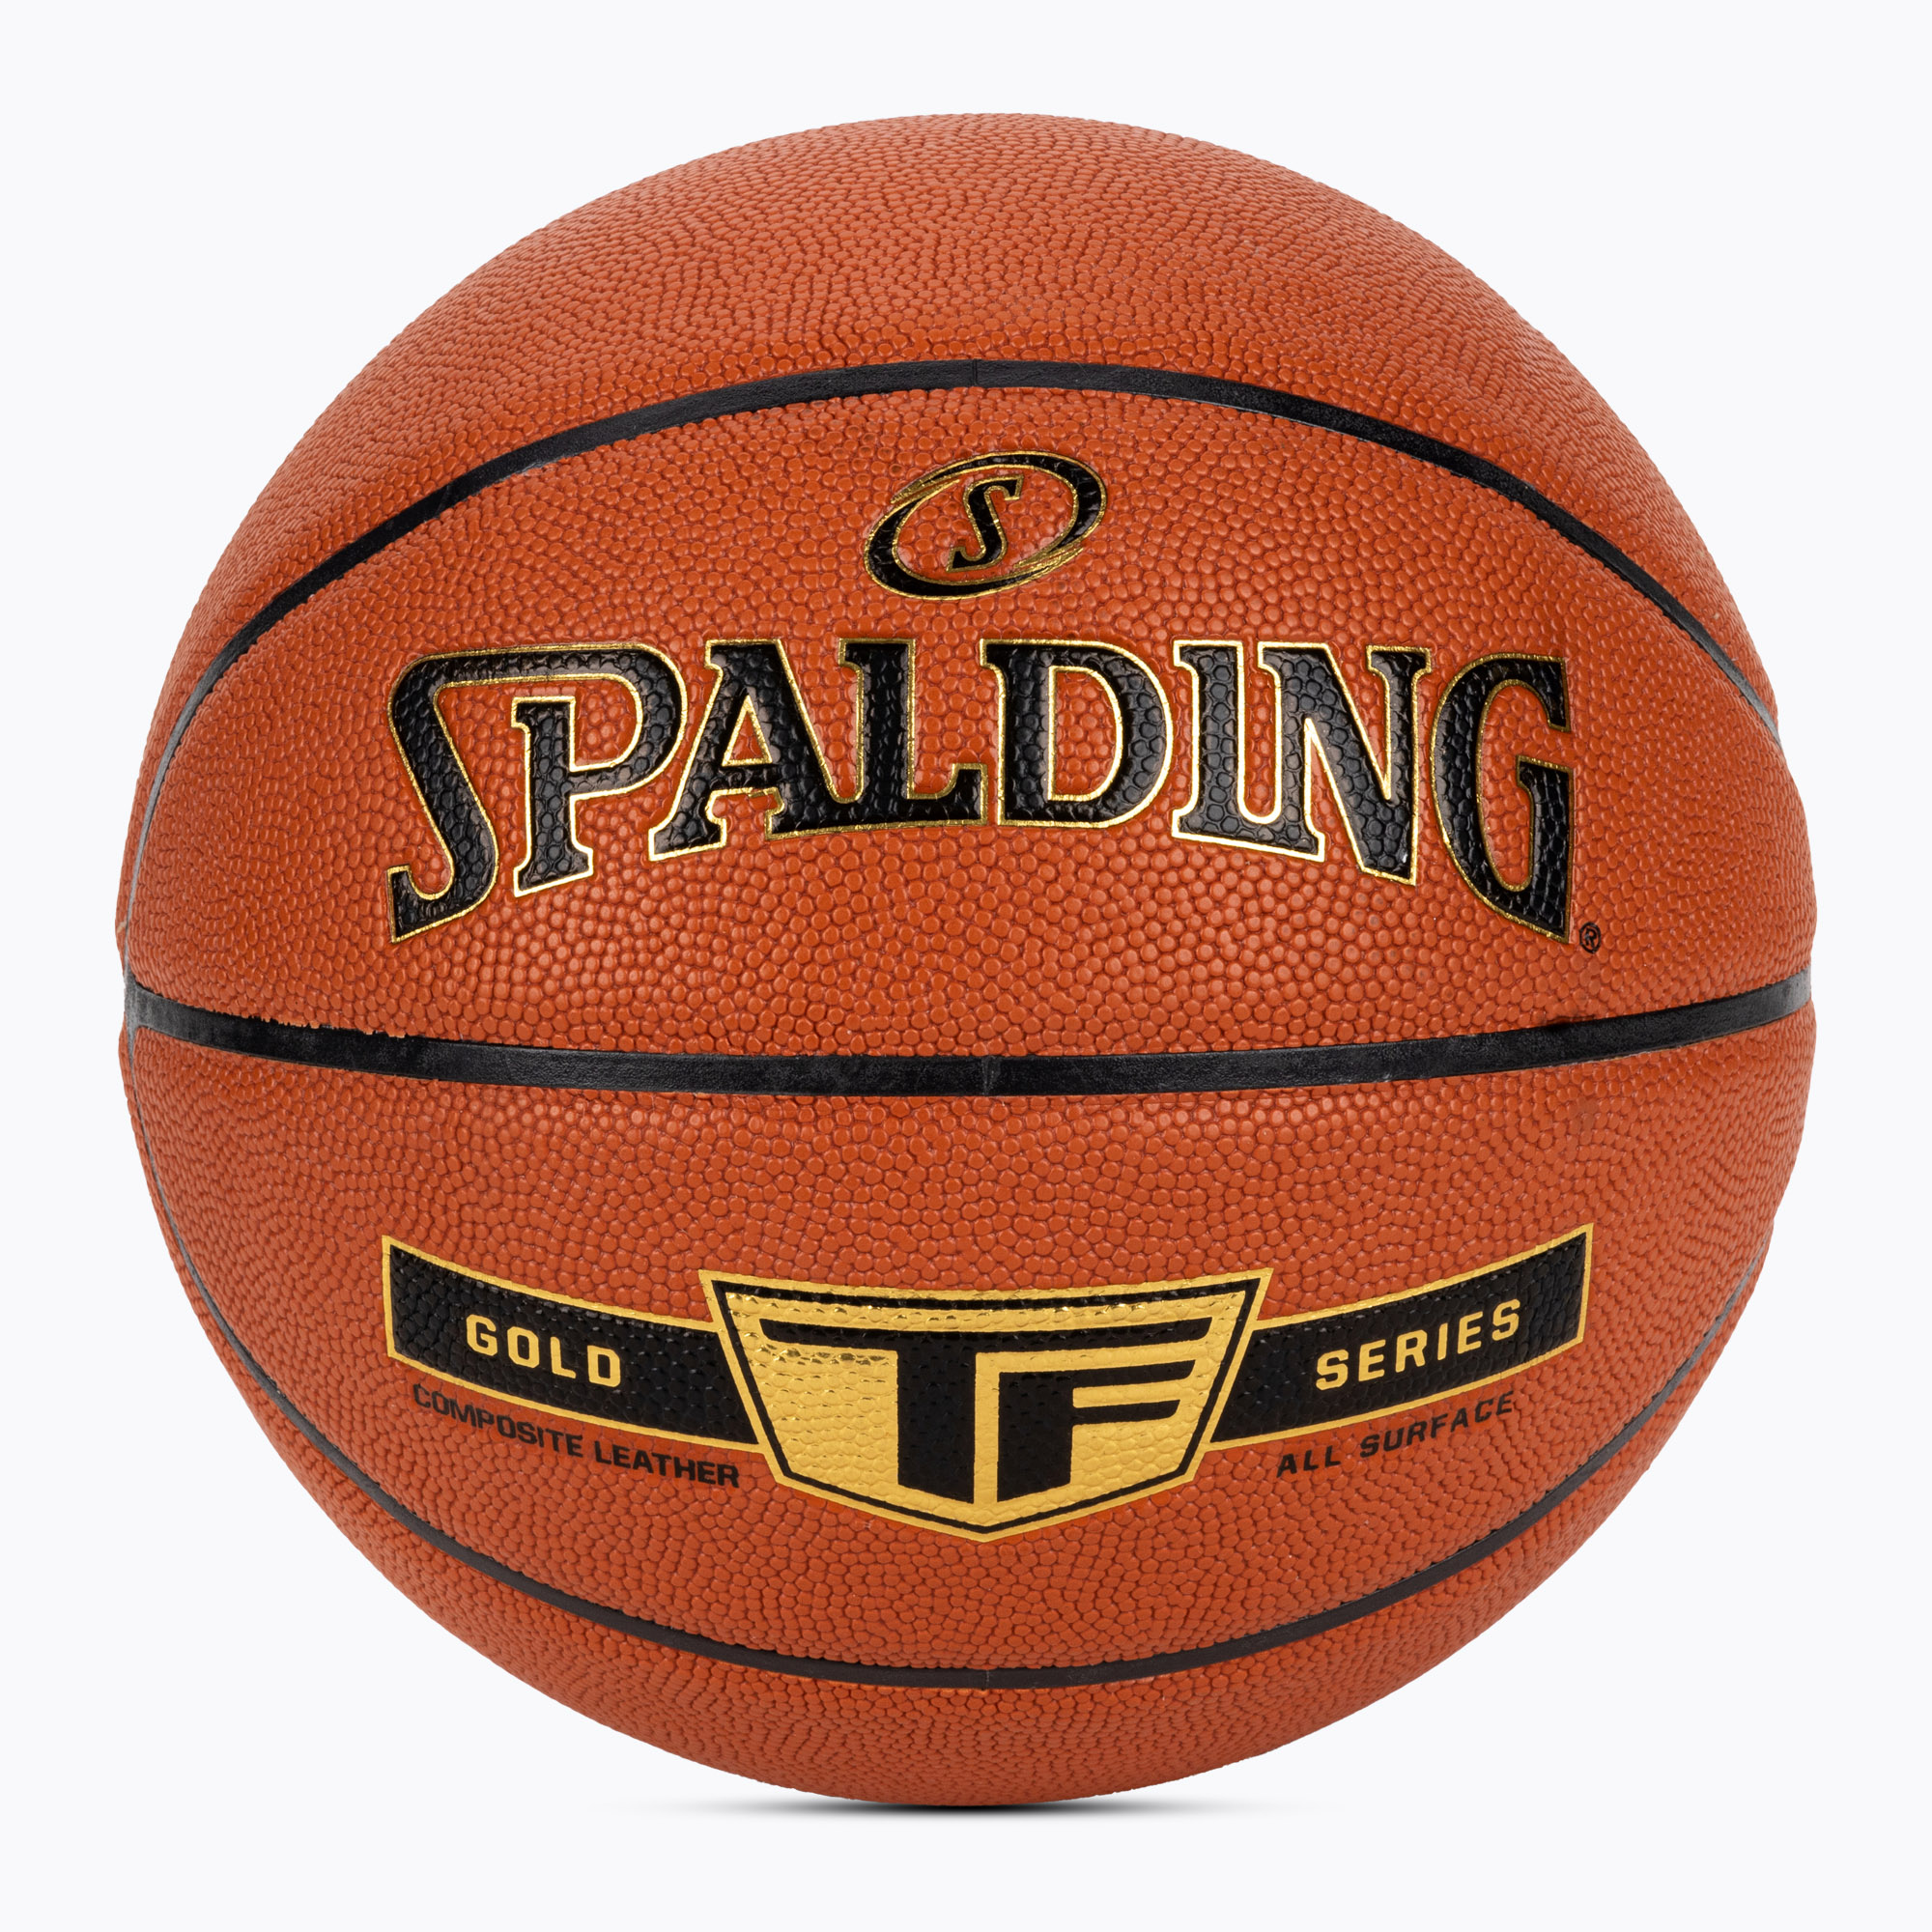 Spalding TF Gold баскетбол Sz7 76857Z размер 7